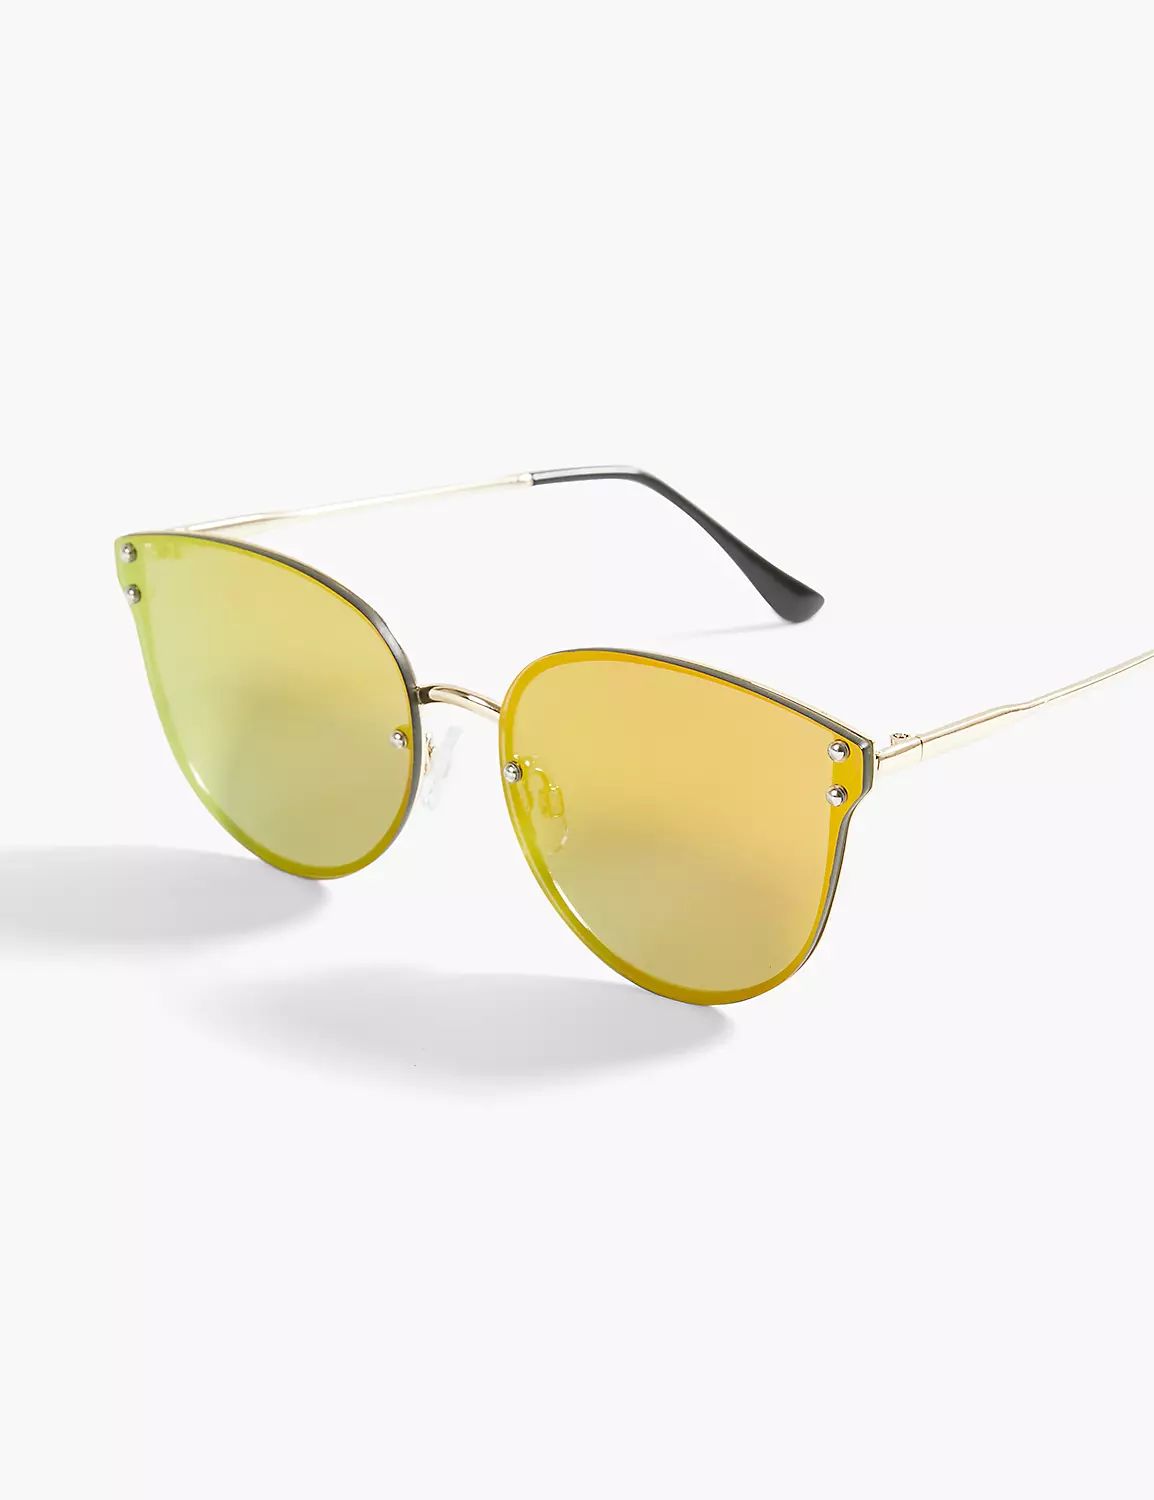 Mirrored Cateye Sunglasses | LaneBryant | Lane Bryant (US)